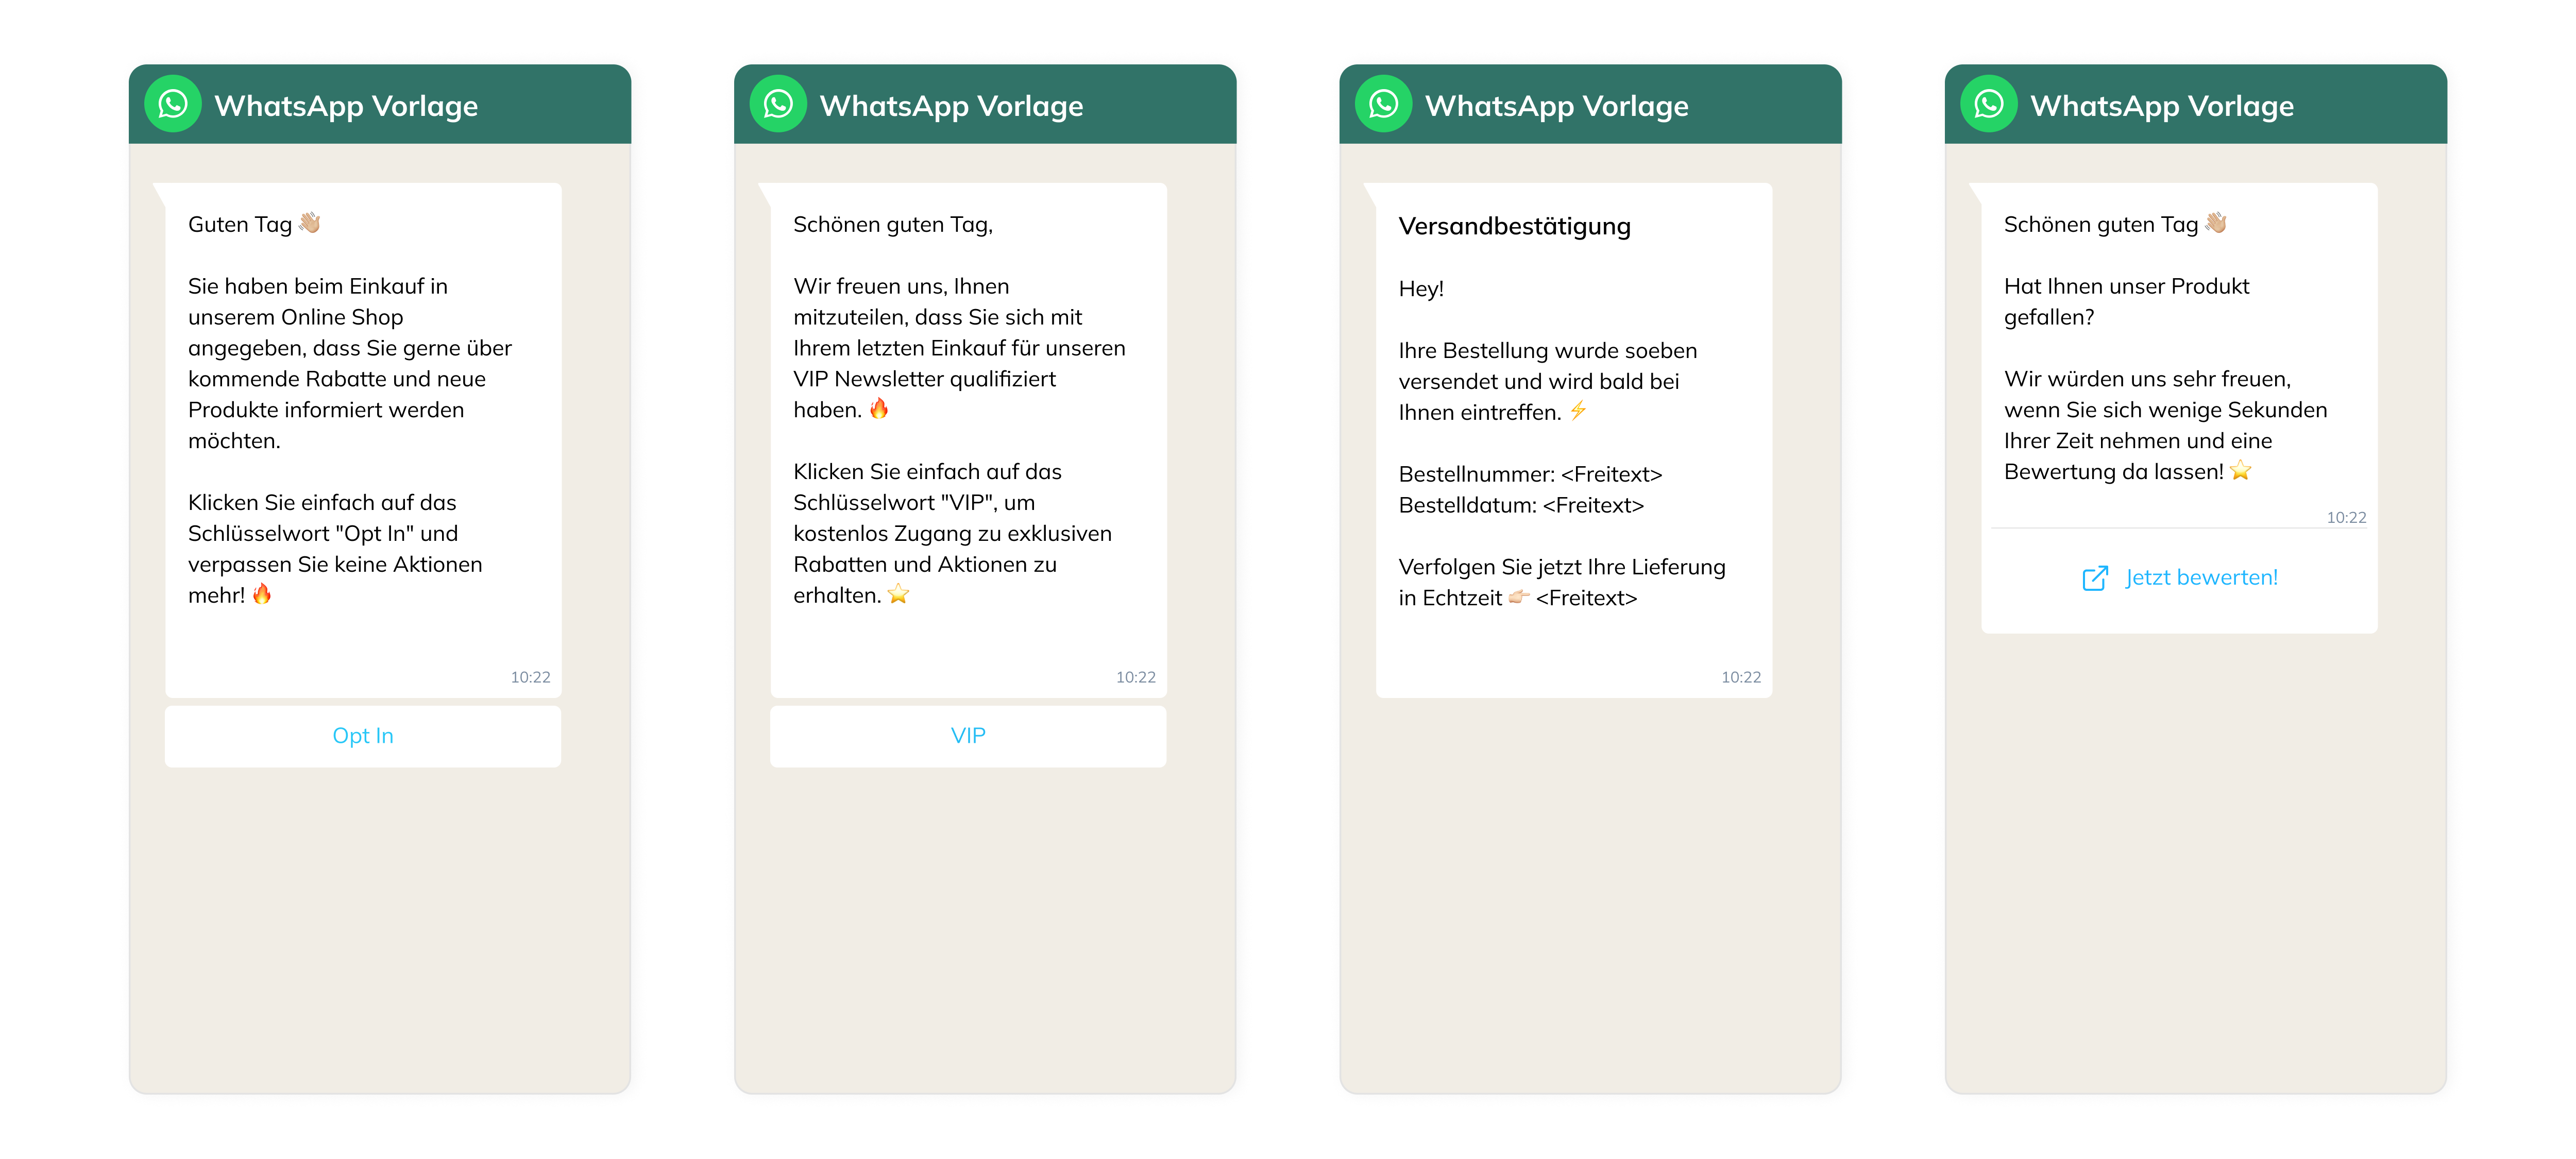 WhatsApp Vorlagen eCommerce.png